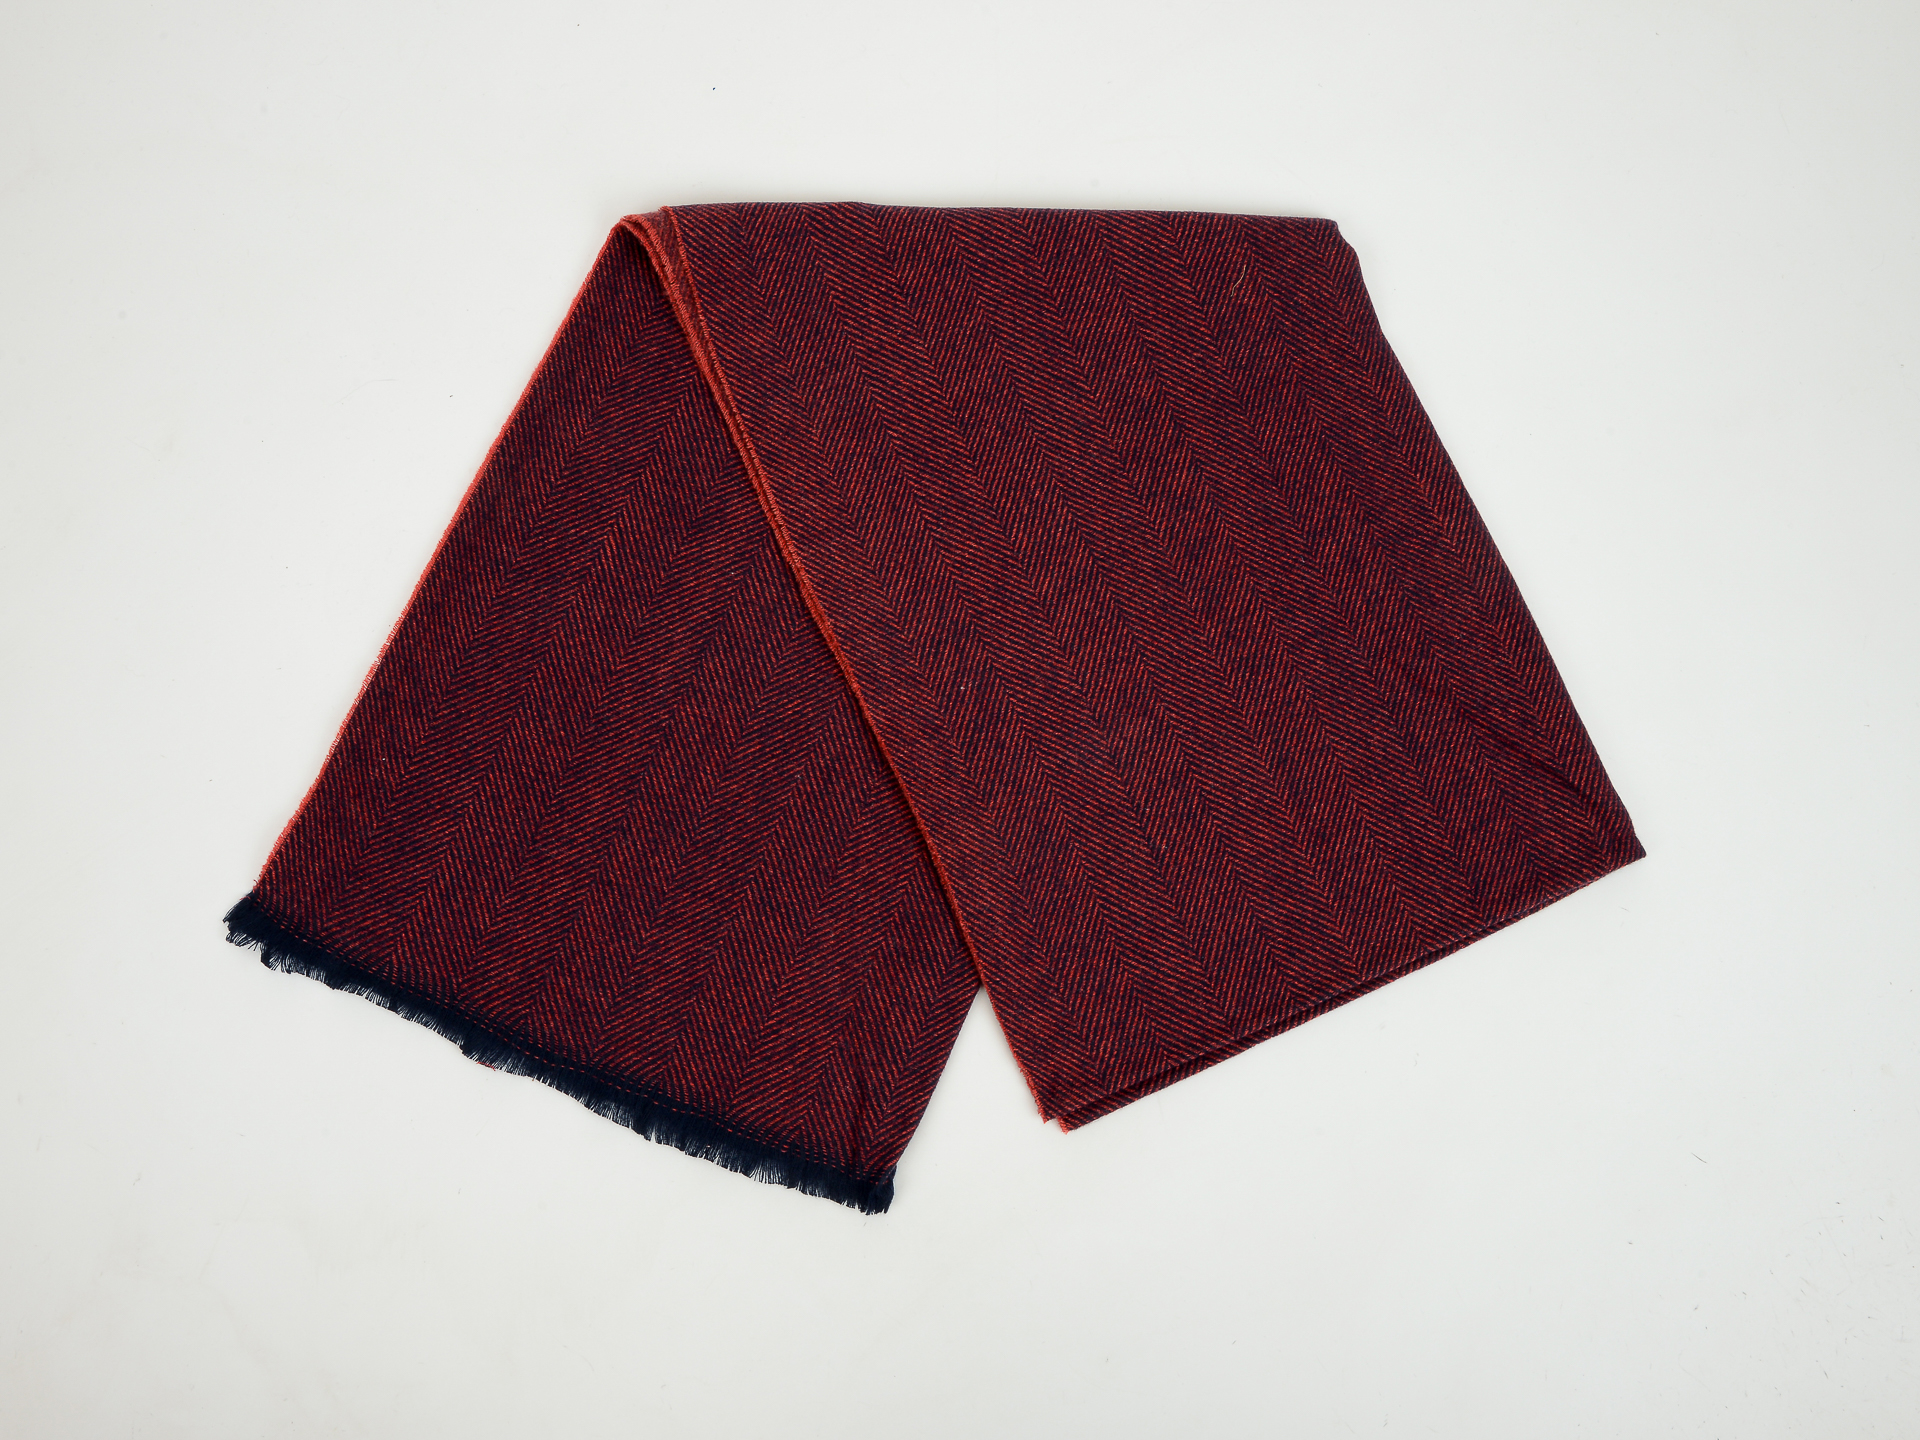 Esarfa KLOP visinie, L686, din material textil